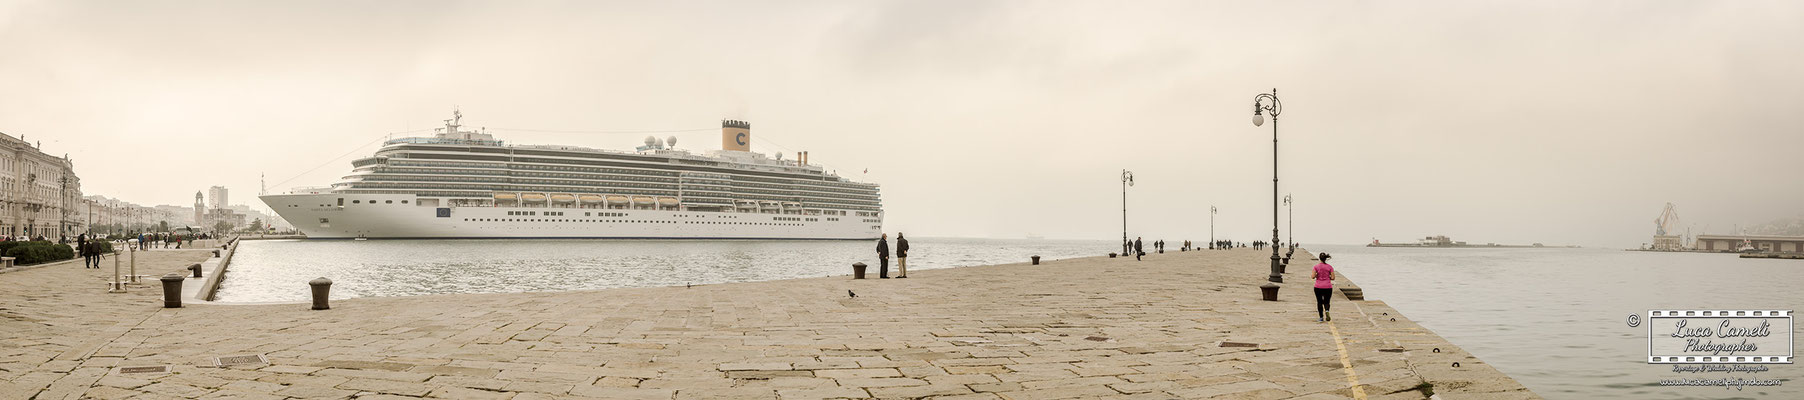 Trieste - Molo Audace, Le Rive, Costa Crociere. © Luca Cameli Photographer